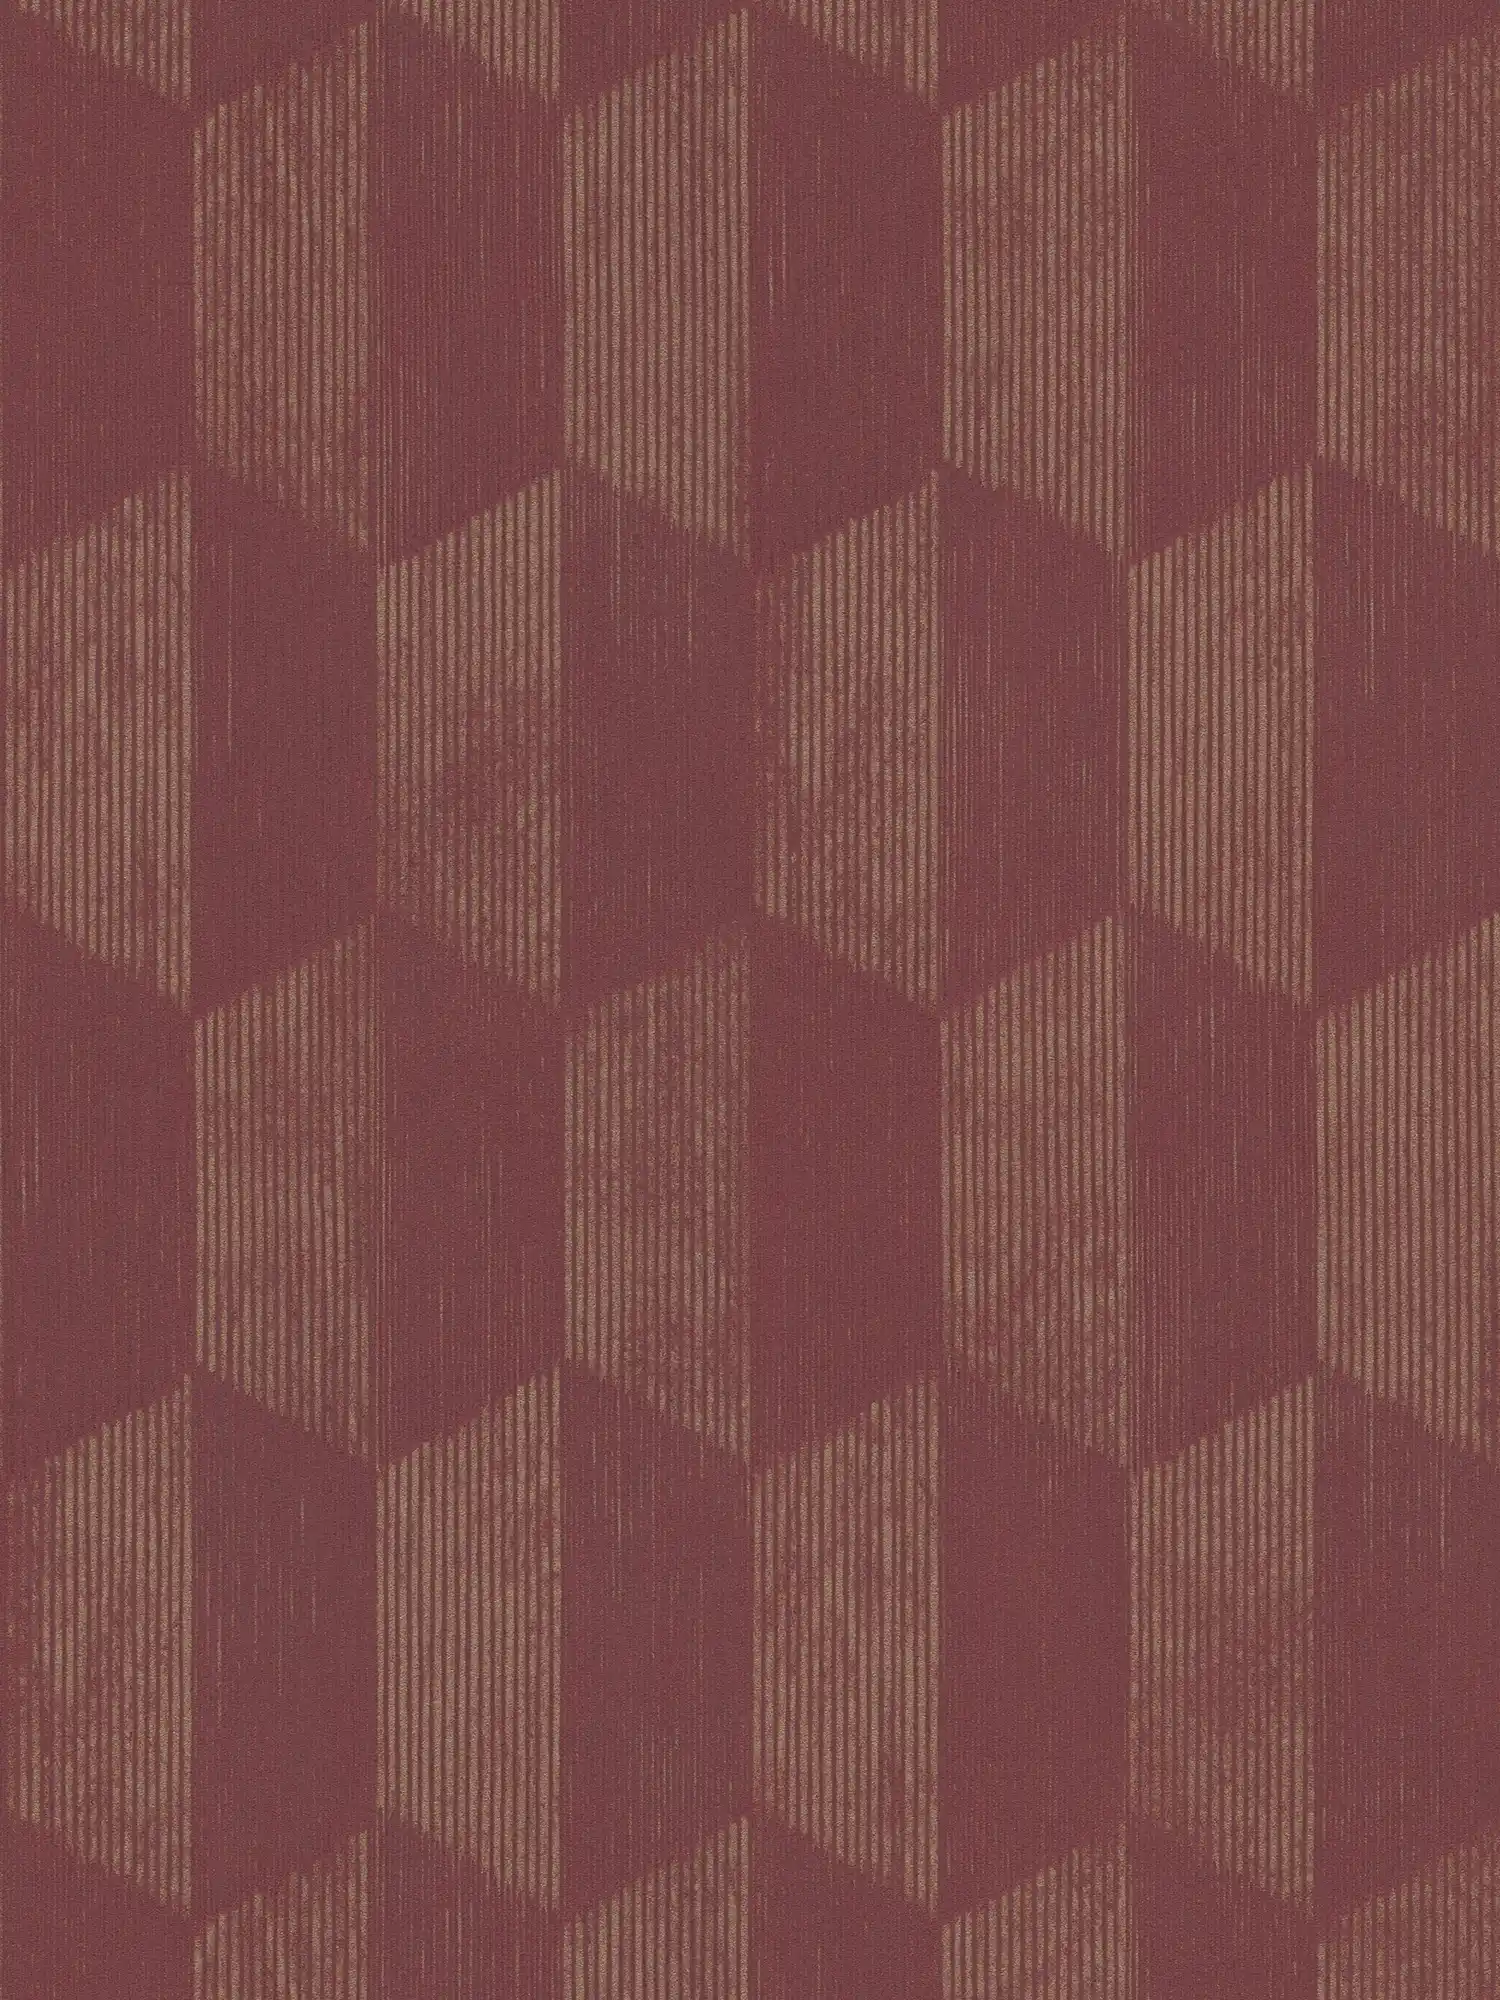 Textuurbehang met 3D grafisch patroon - metallic, rood
